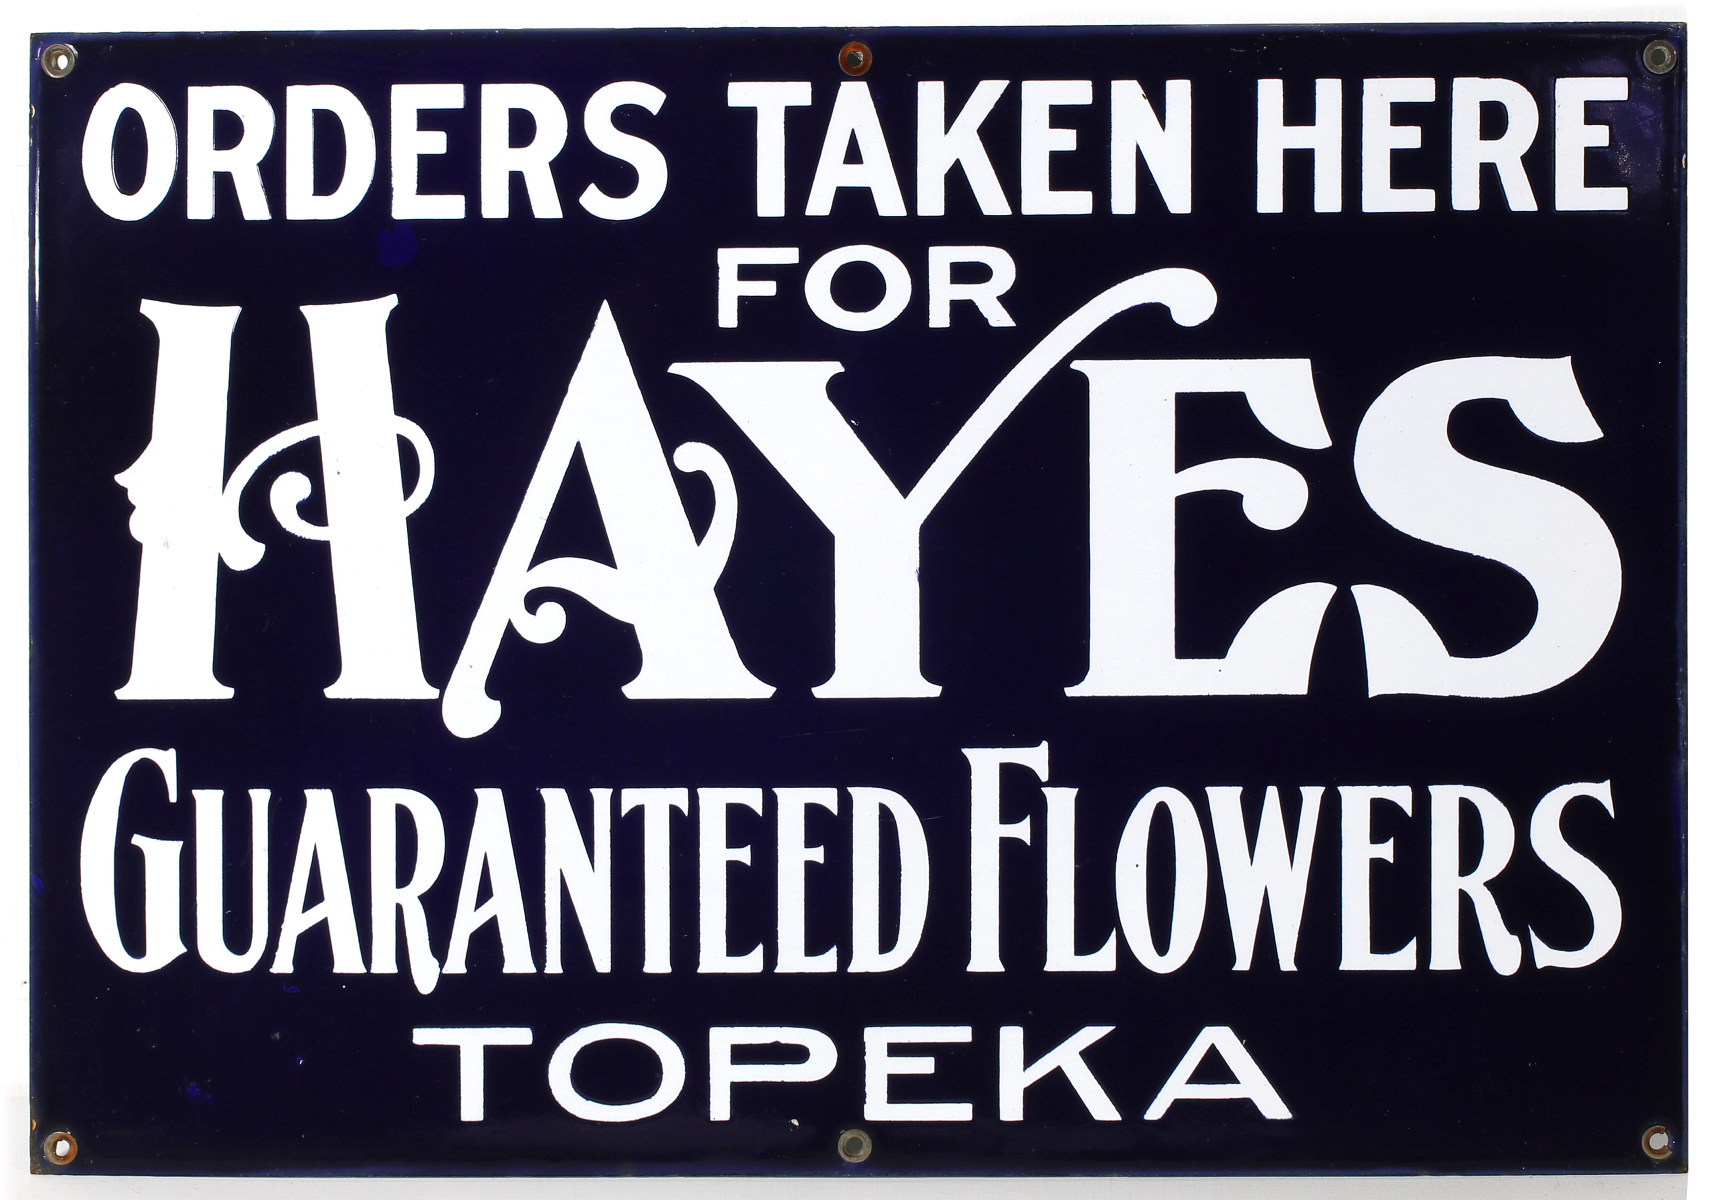 HAYES GUARANTEED FLOWERS TOPEKA | PORCELAIN ENAMEL SIGN